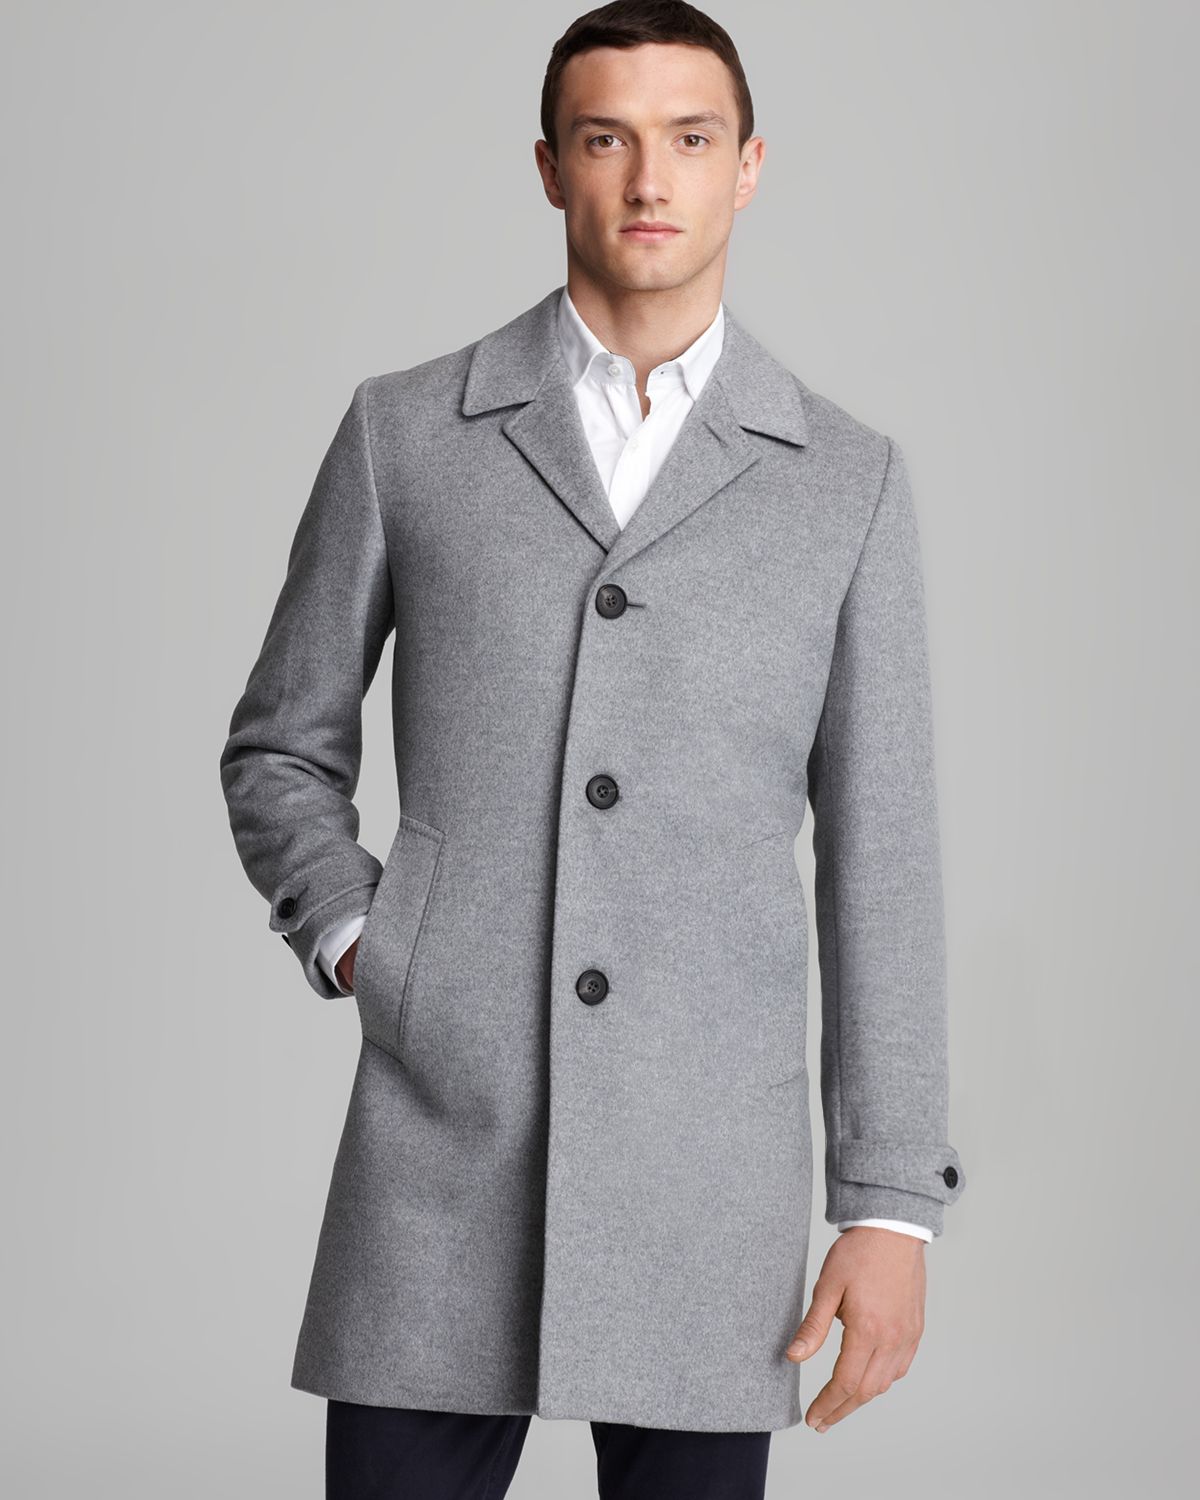 burberry men's wool coat